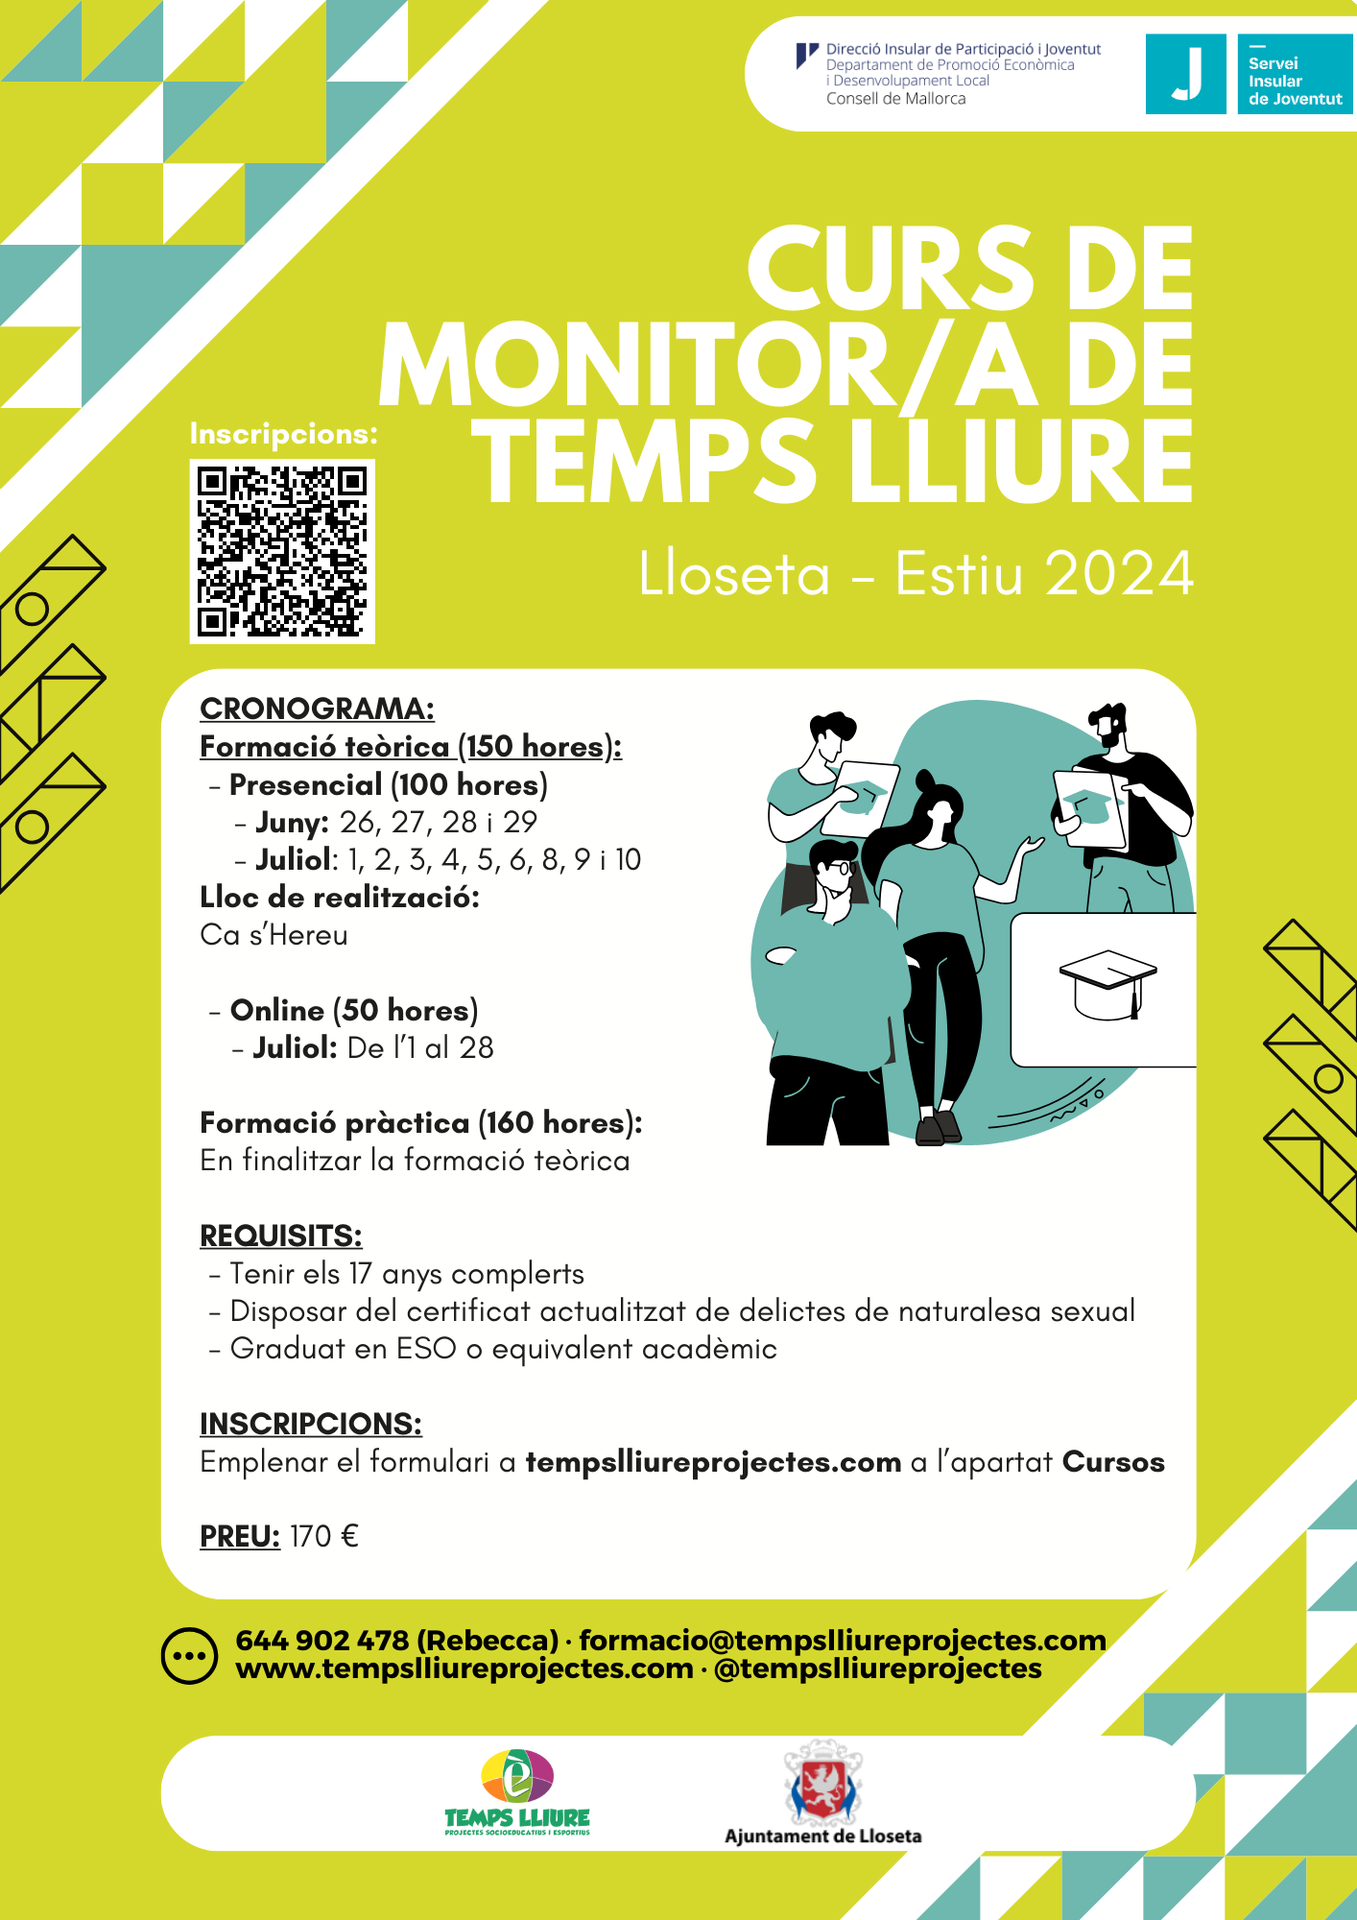 Curso de Monitor/a de Temps Lliure - Lloseta (Verano 2024)